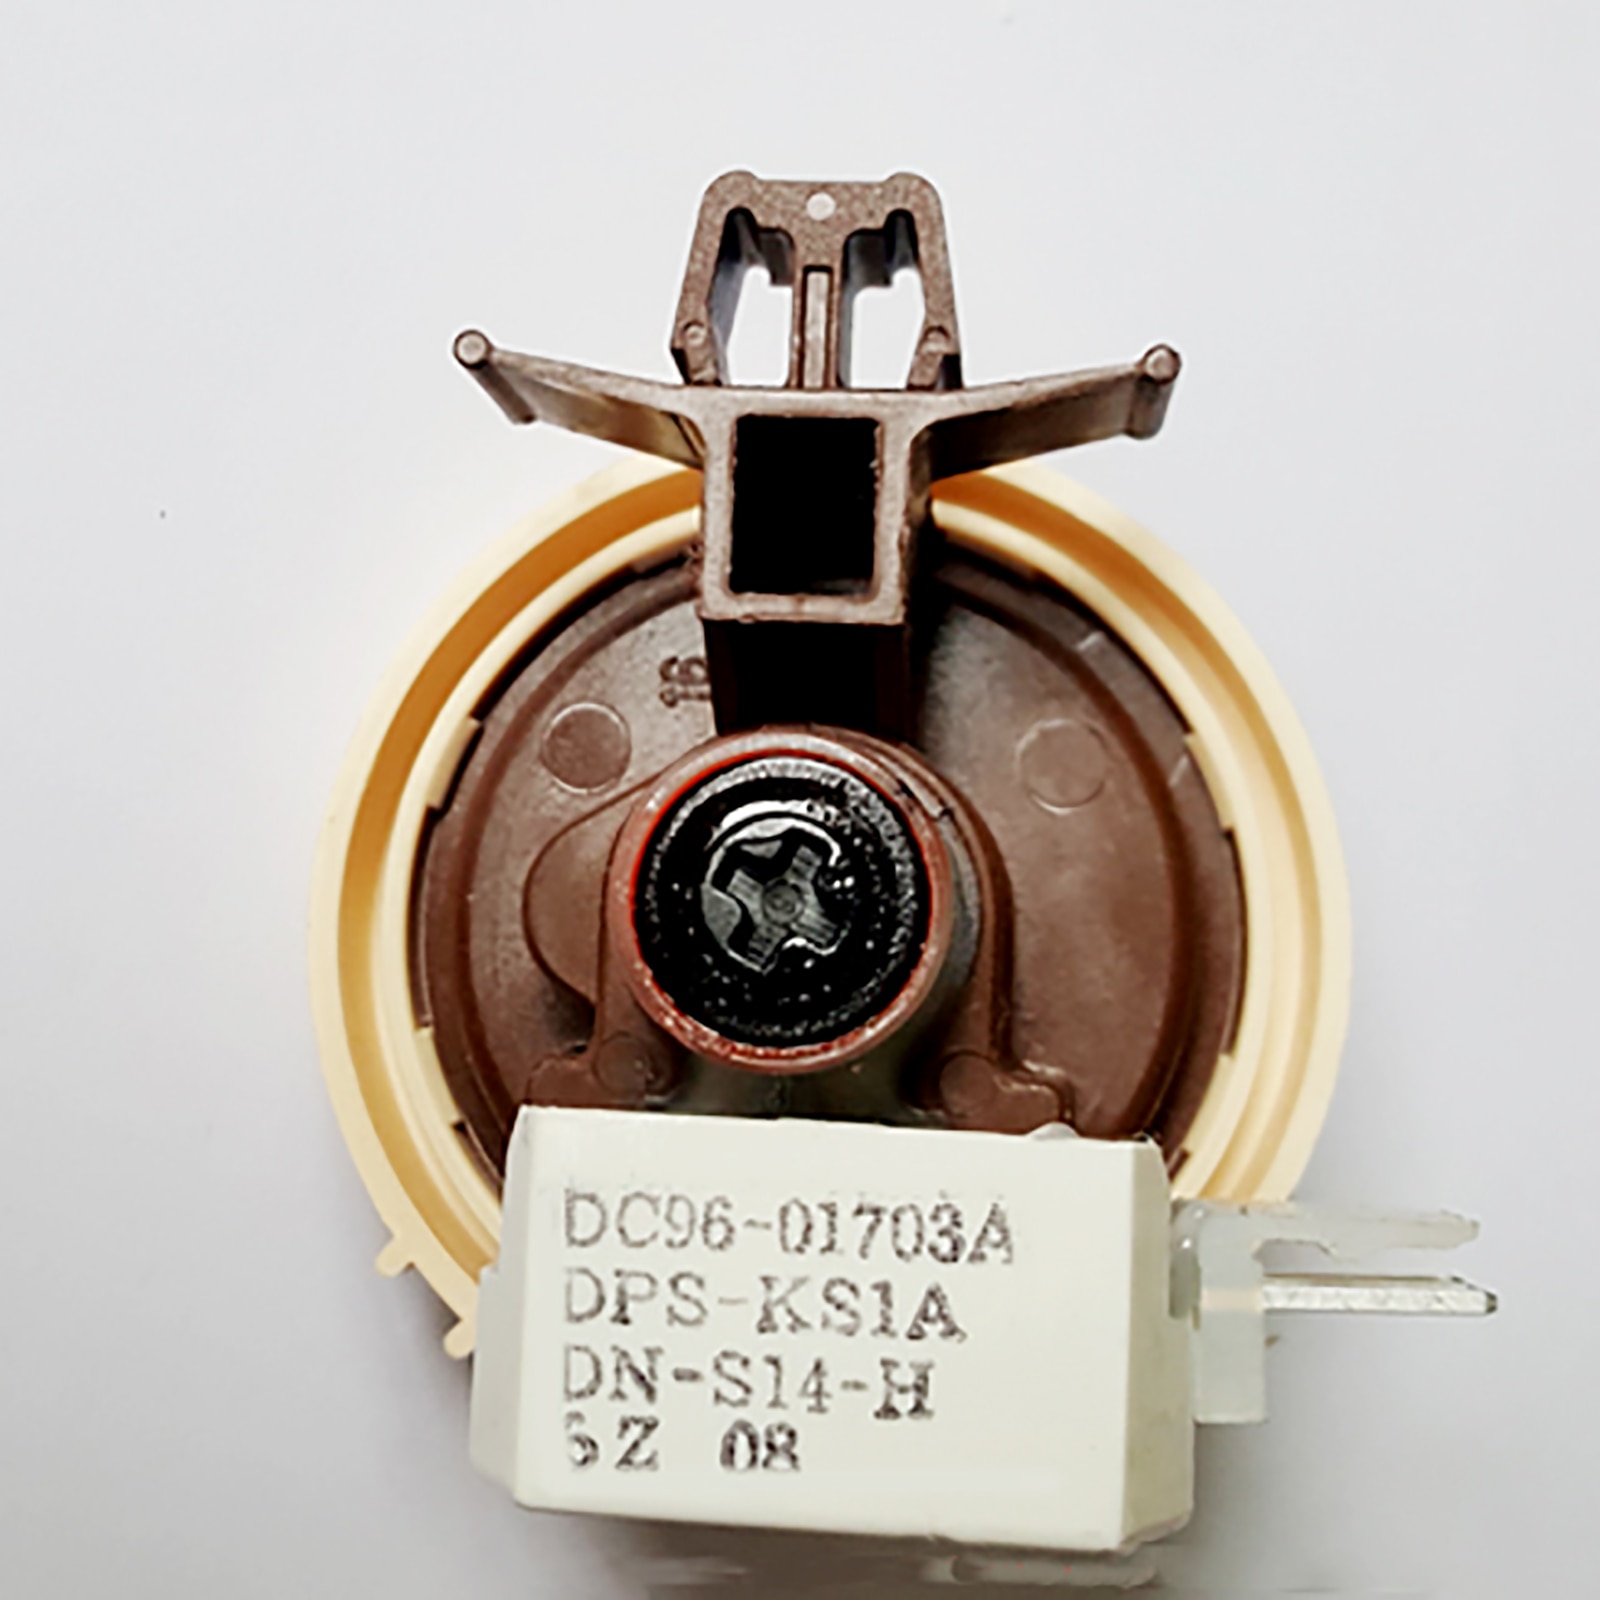 Udskiftning vandstand sensor  dc96-01703a til samsung  wf1600 wcw  wf1702 wcs tromle vaskemaskine vandstand sensor switch dele